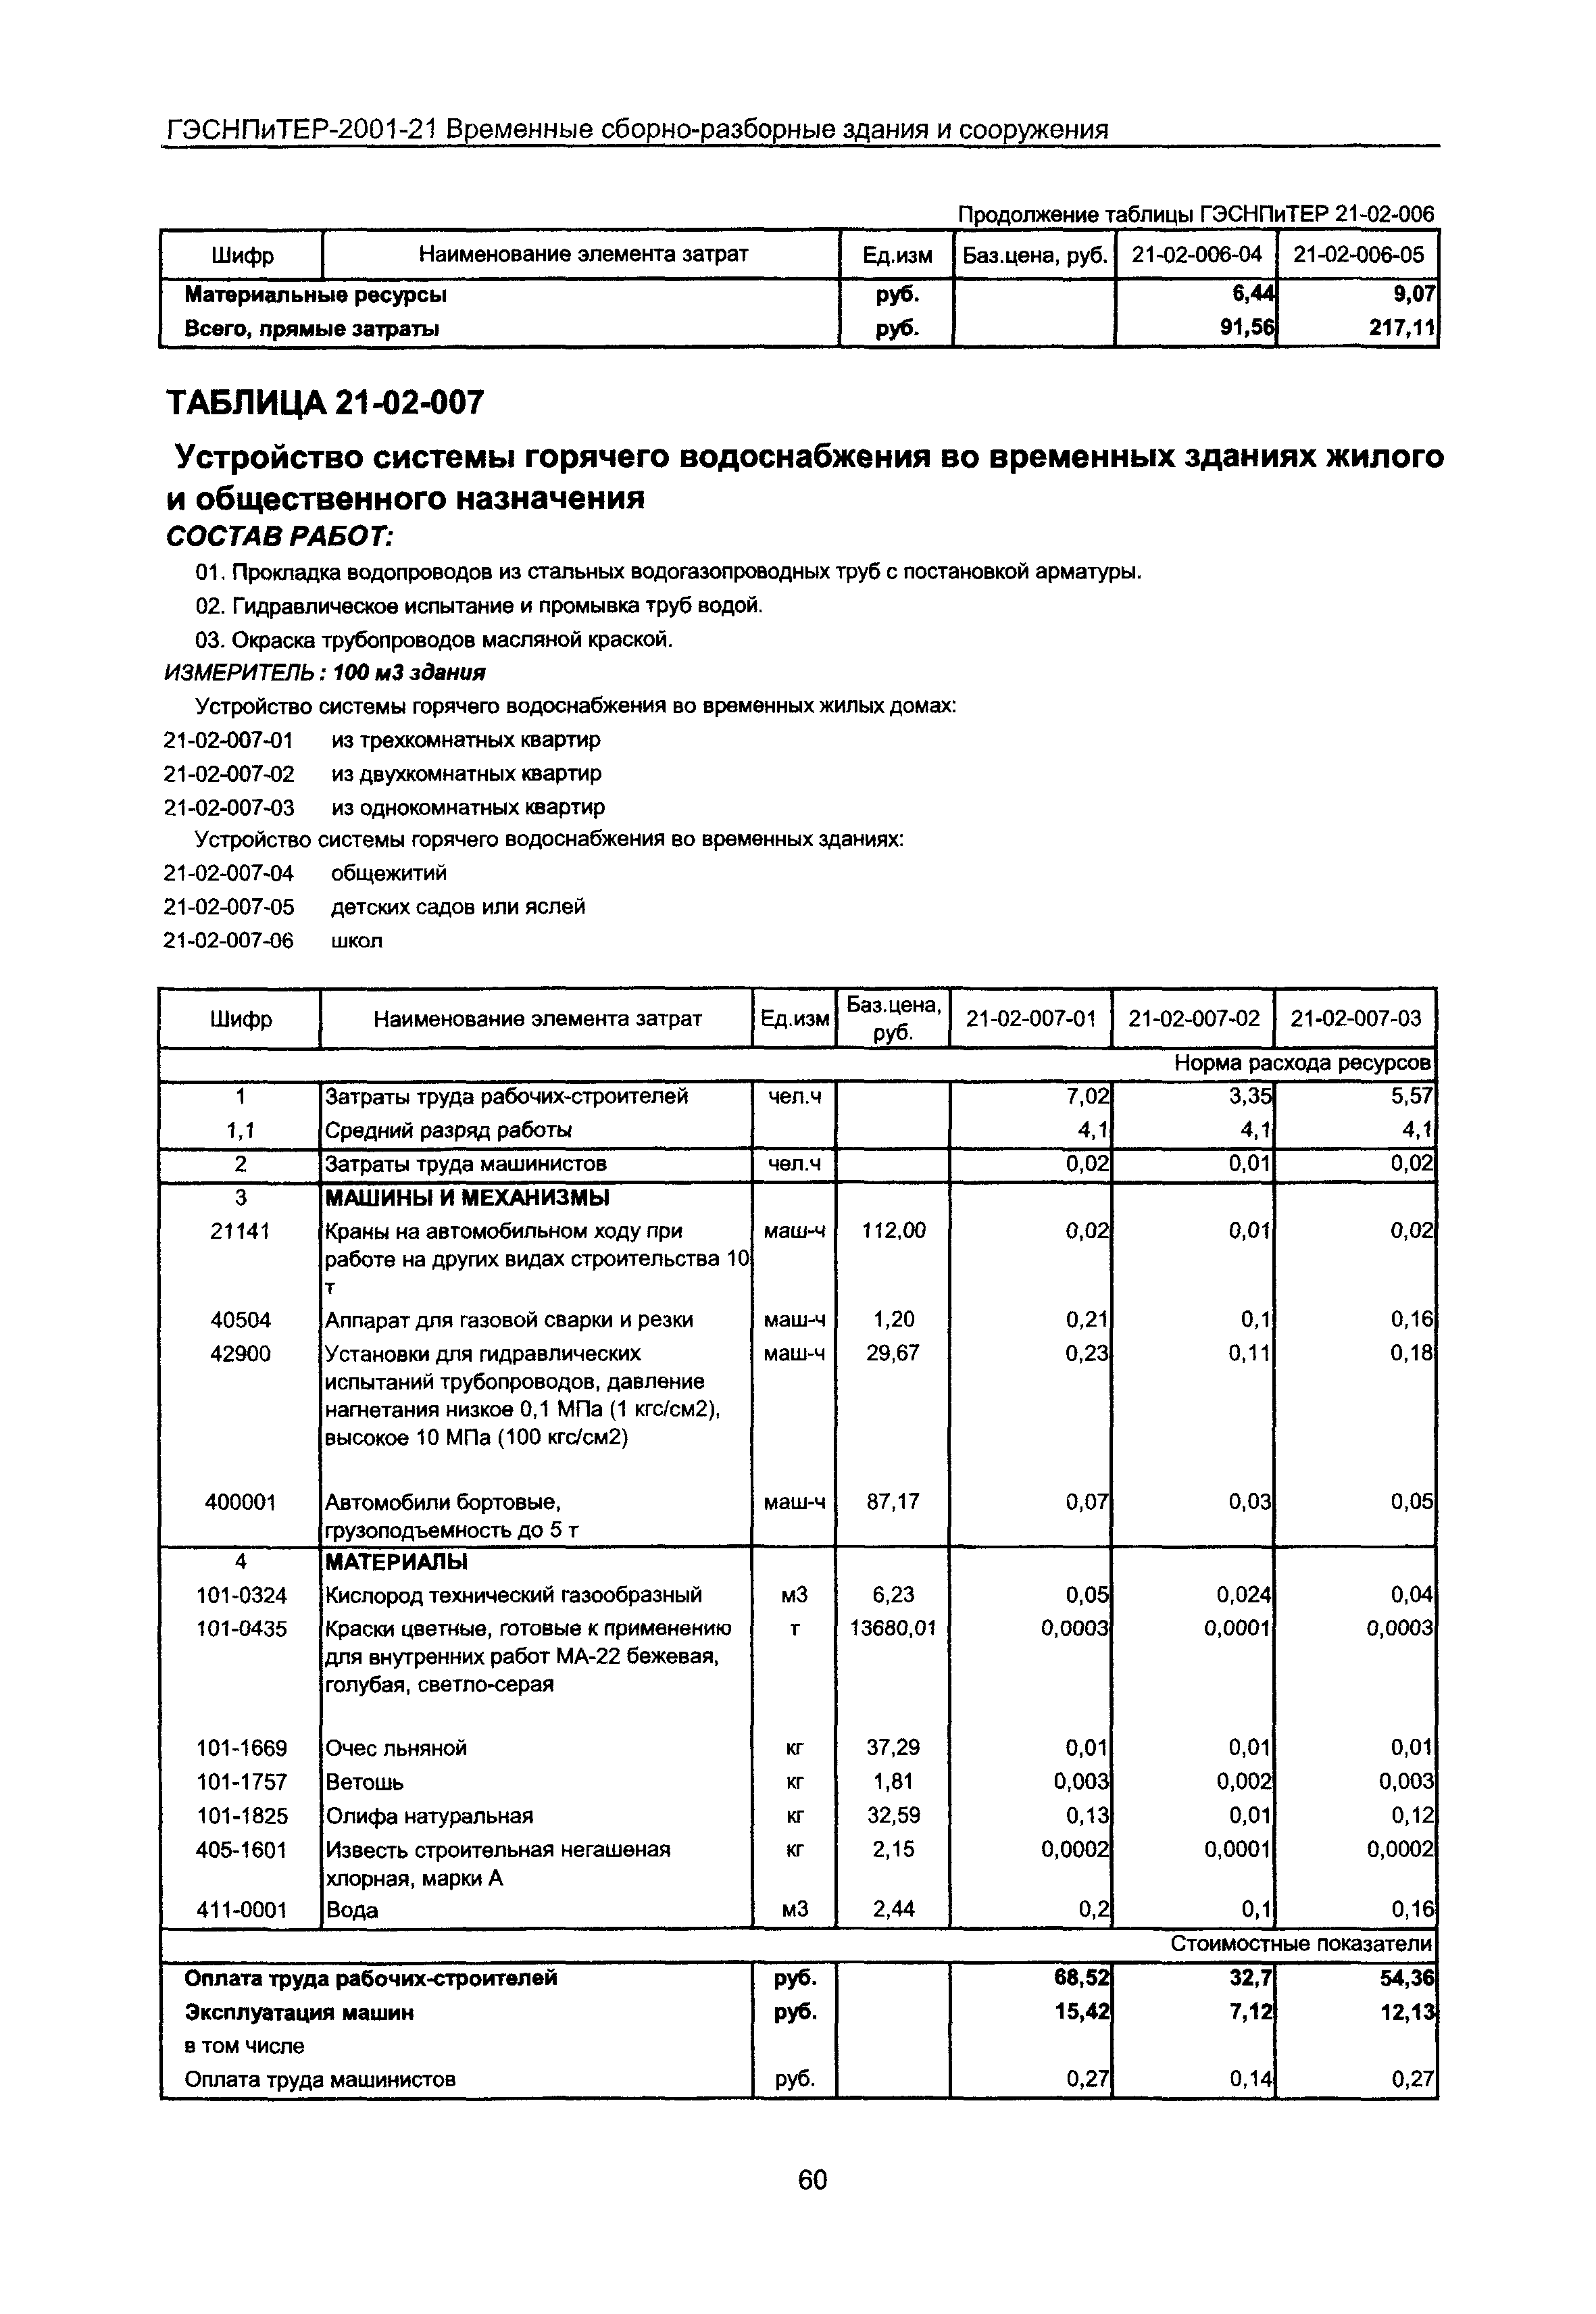 ГЭСНПиТЕР 2001-21 Московской области